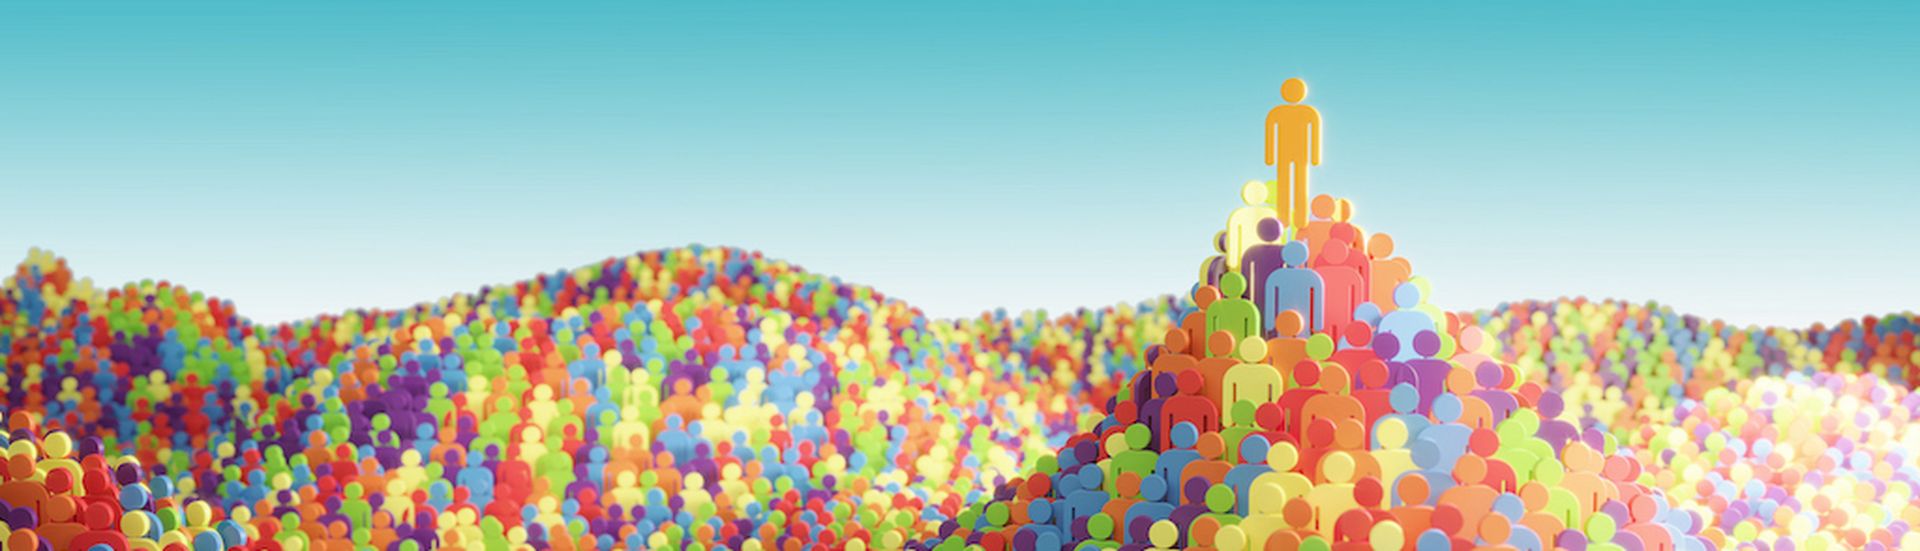 Multicolored people figures, symbolizing variation, equality, togetherness concept. (3d render)